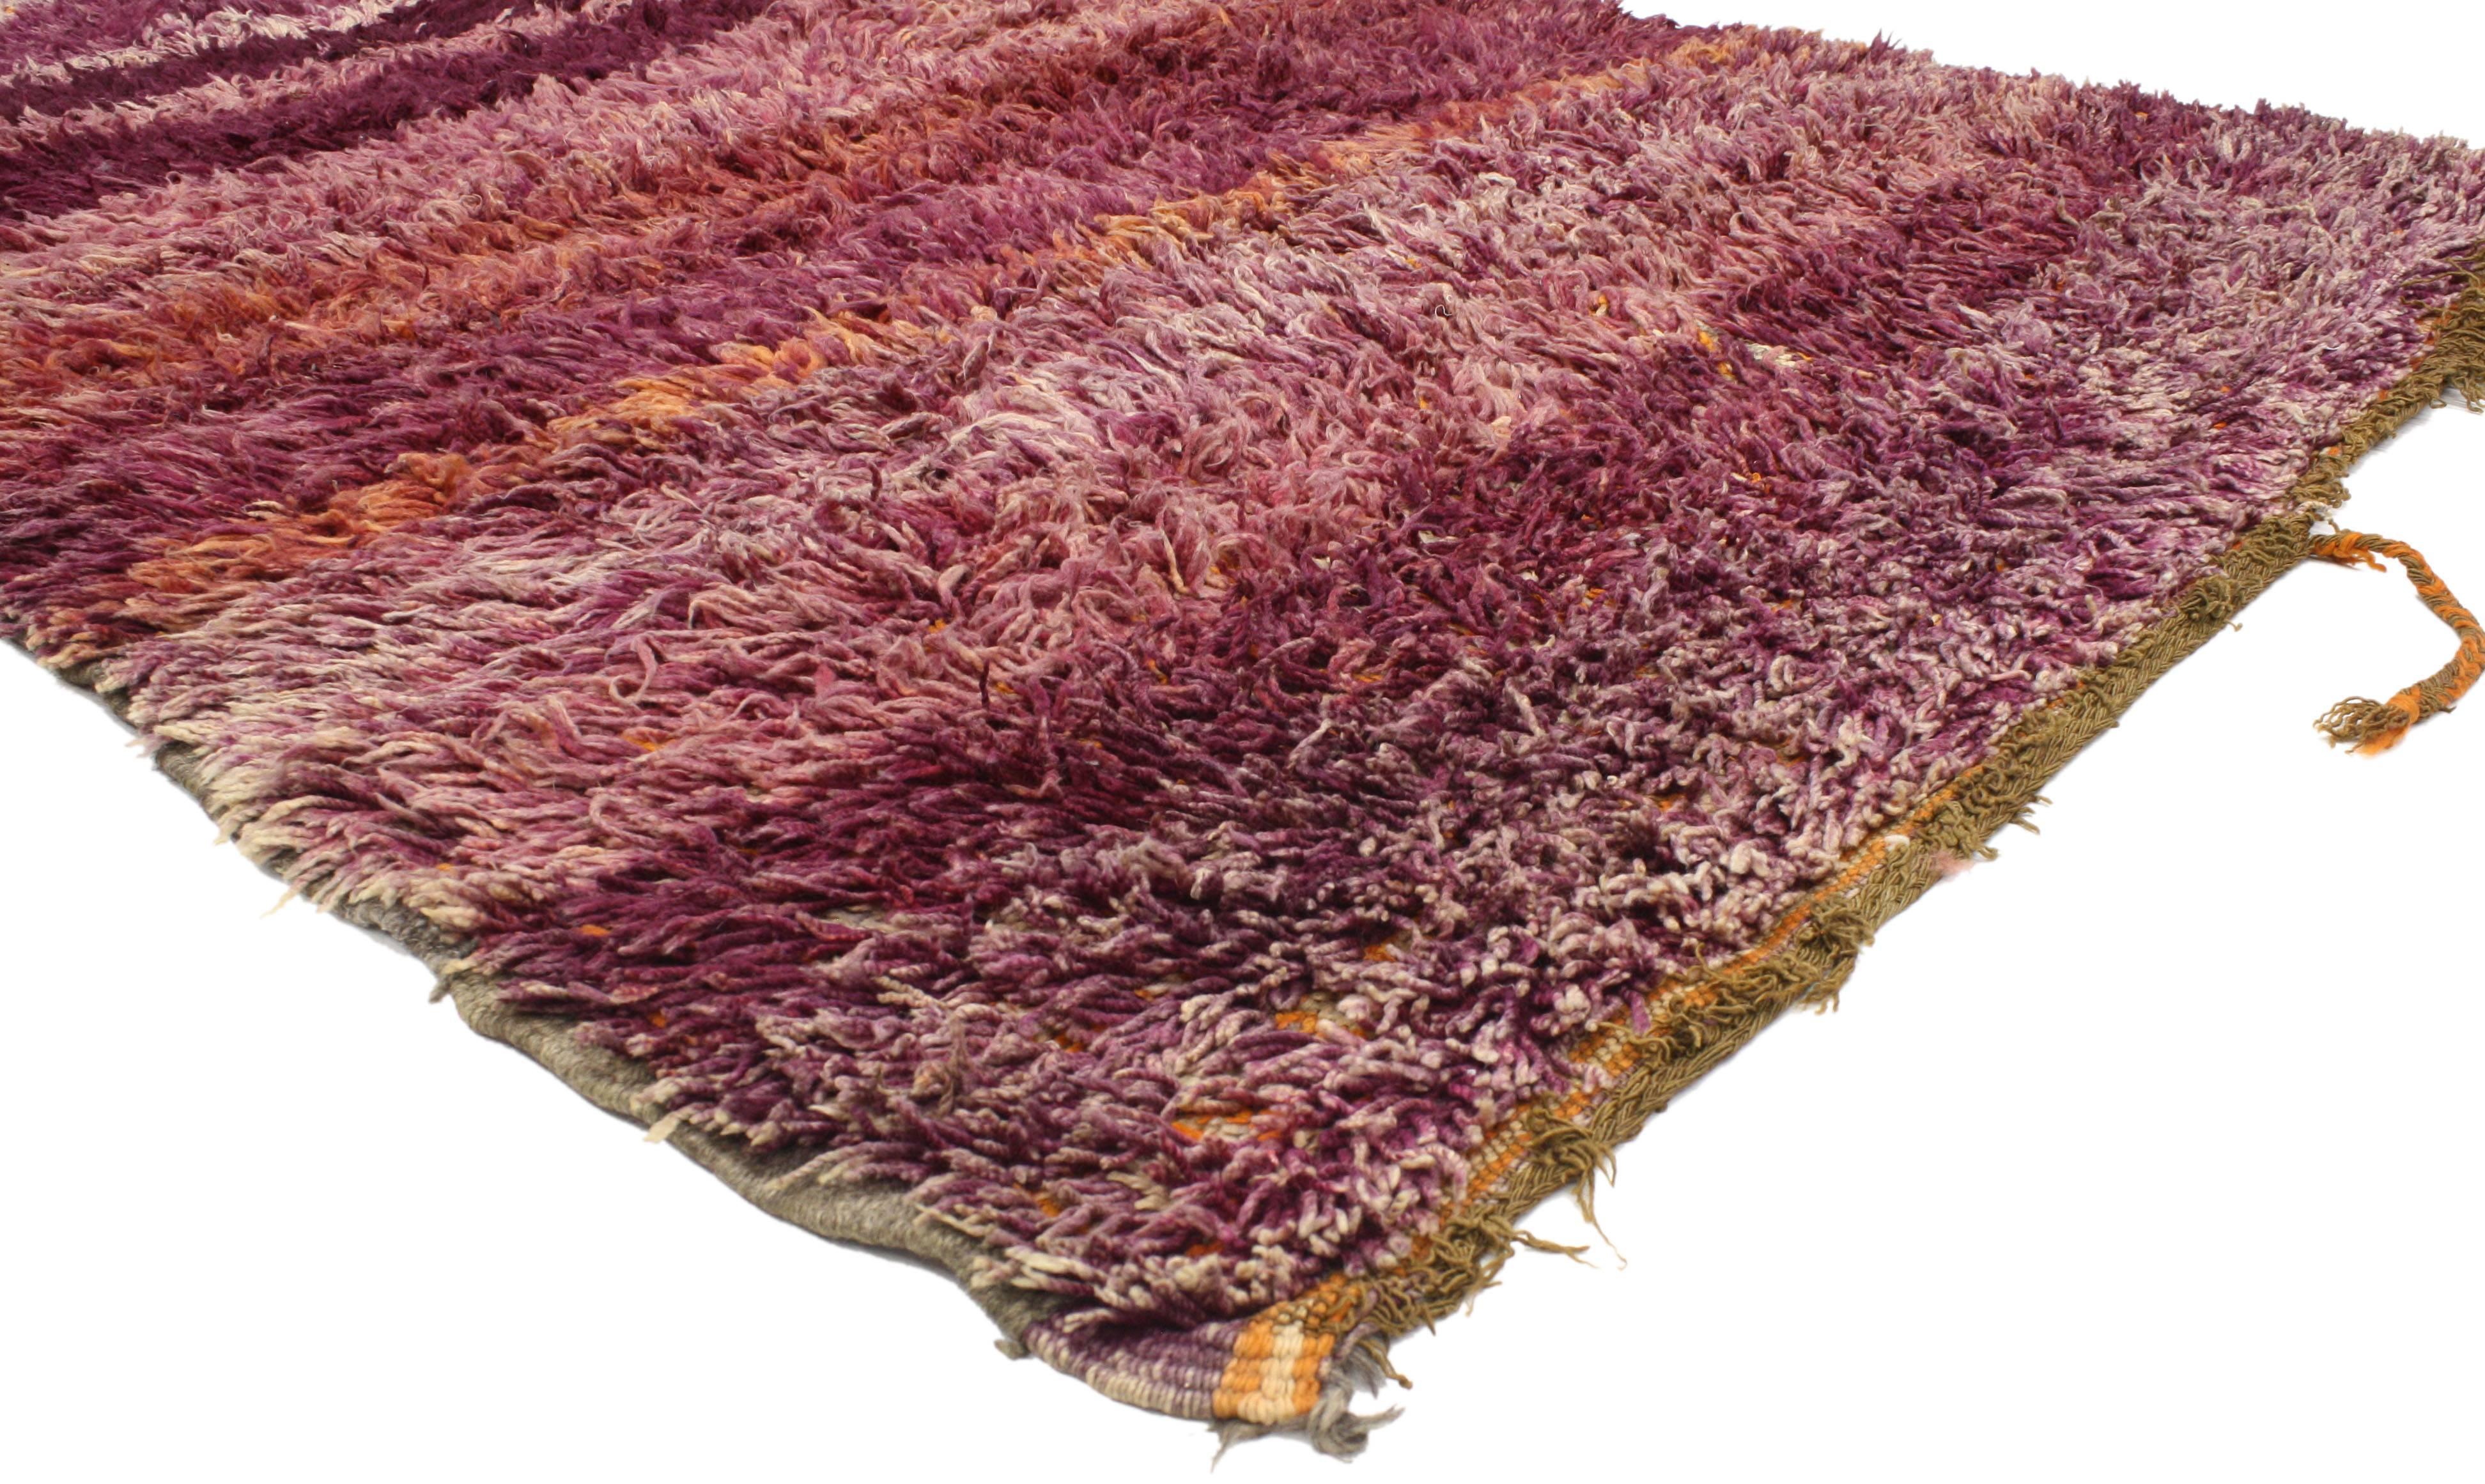 20635 Vintage Beni Mrirt Marokkanischer Teppich, 05'09 x 08'03. Beni Mrirt Teppiche verkörpern eine verehrte marokkanische Webtradition, die für ihre luxuriöse Textur, geometrischen Motive und beruhigenden Erdtöne bekannt ist. Diese Teppiche werden